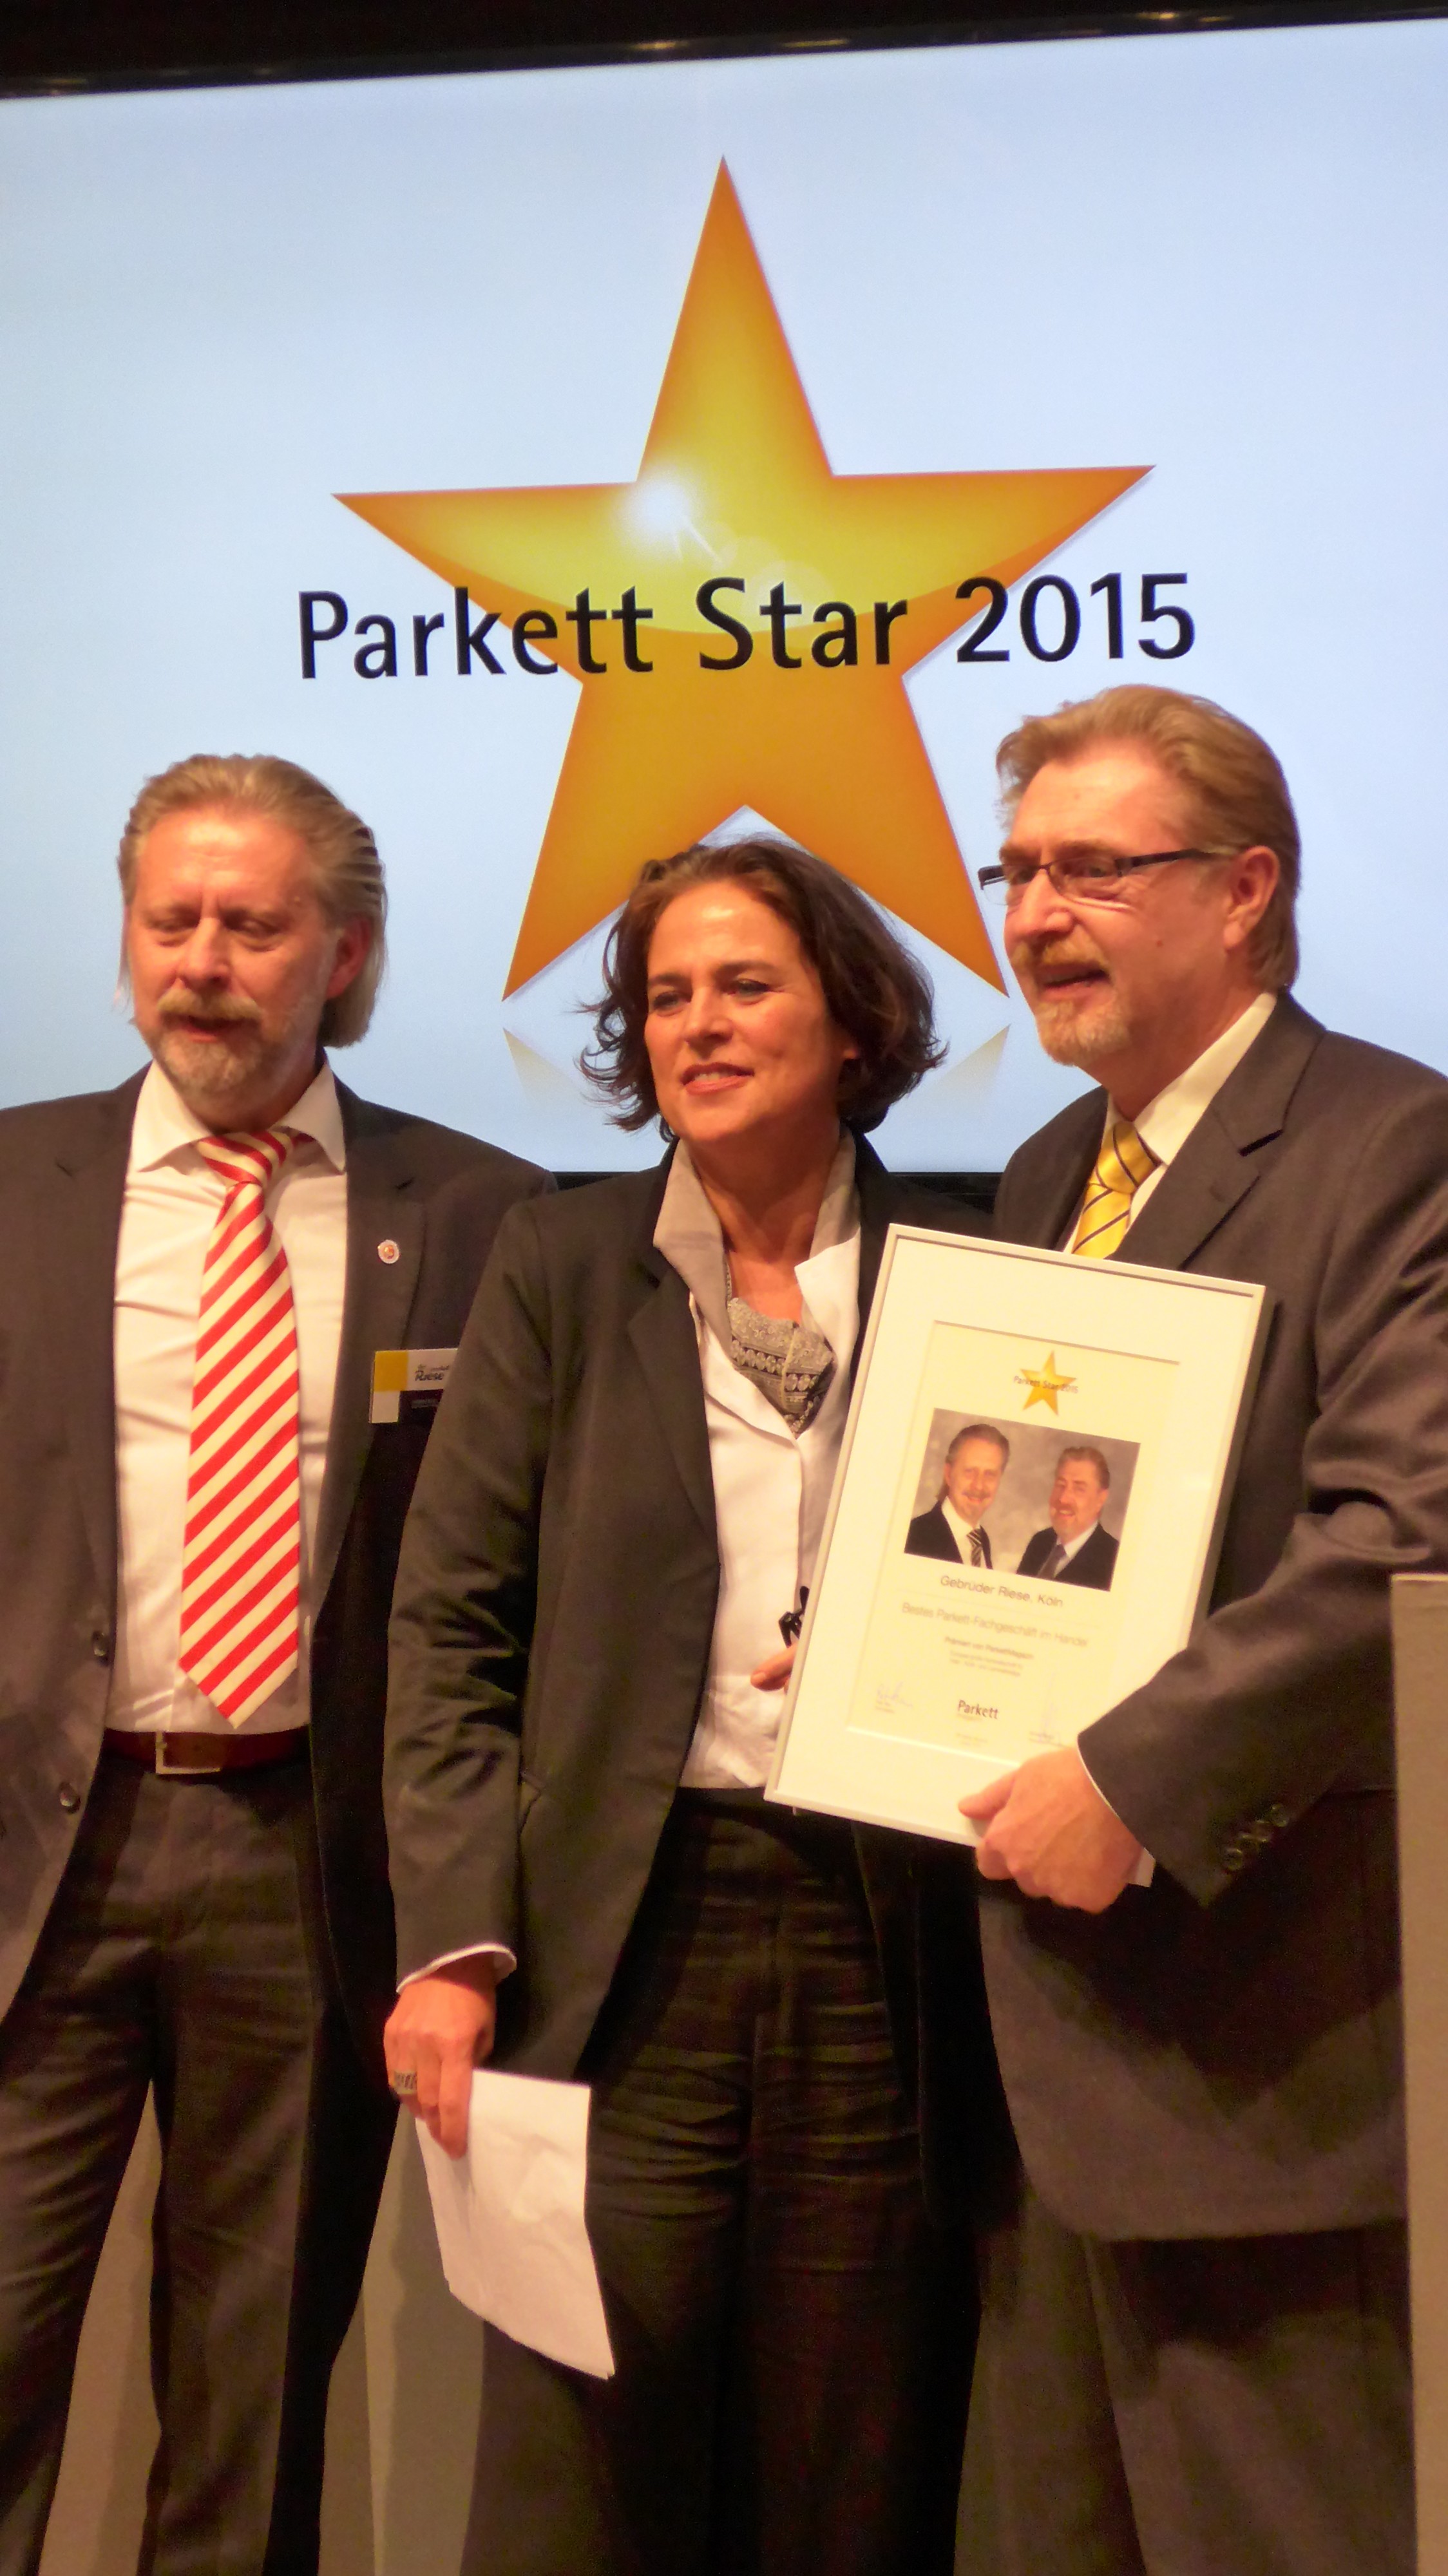 Parkett Star 2015 